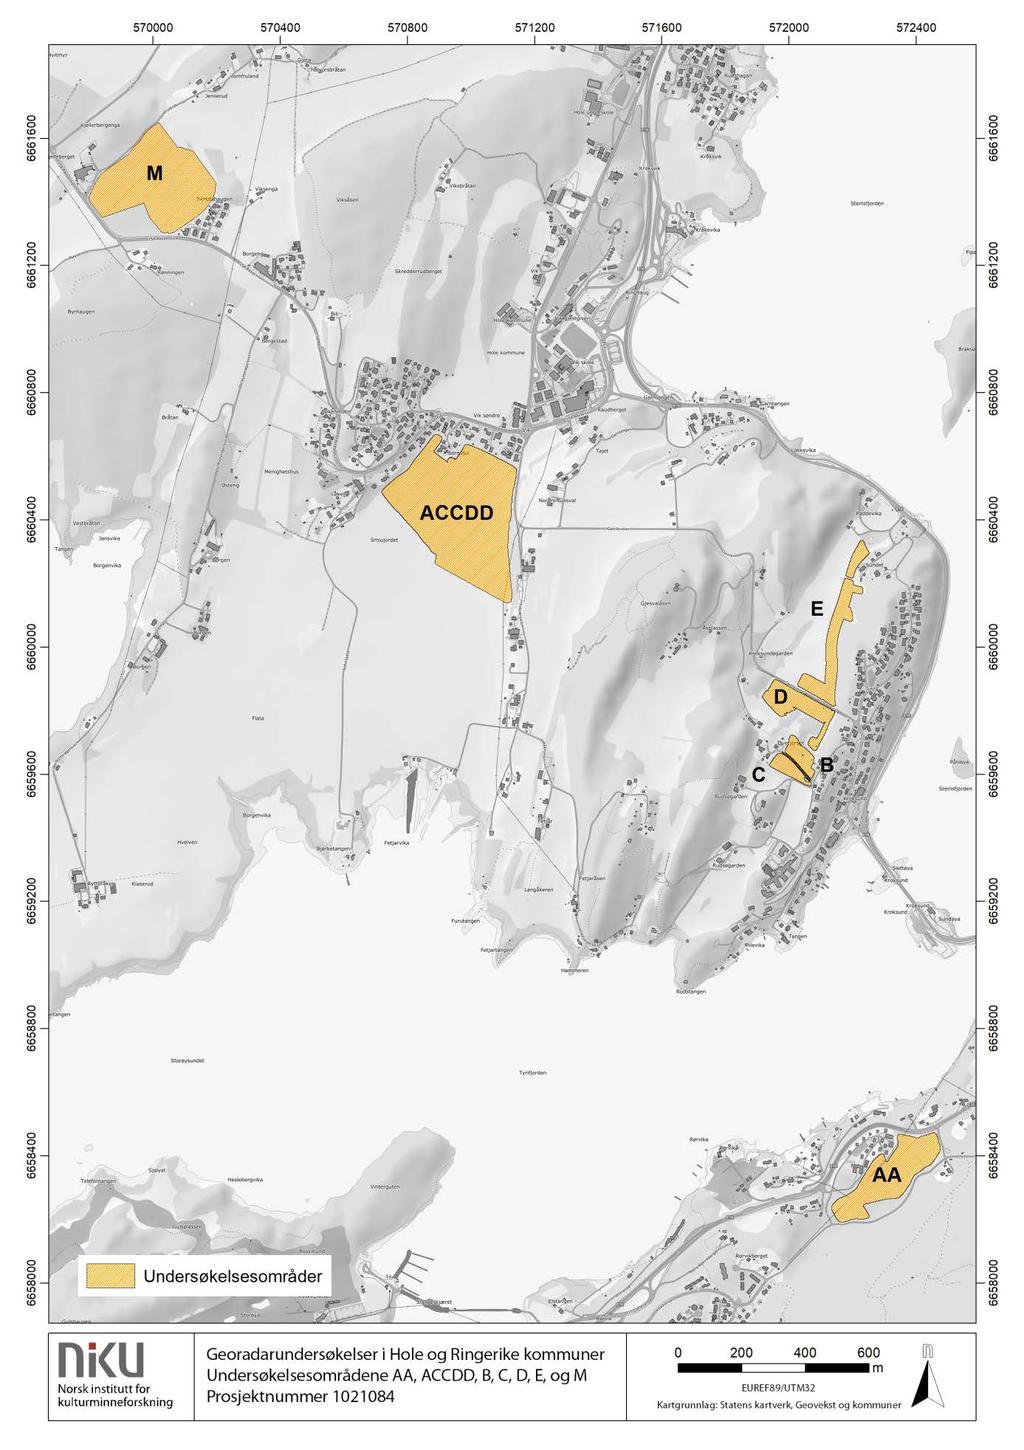 4.1 Hole kommune Figur 2: Undersøkelsesområdene i Hole kommune; Tyriheimsjordet